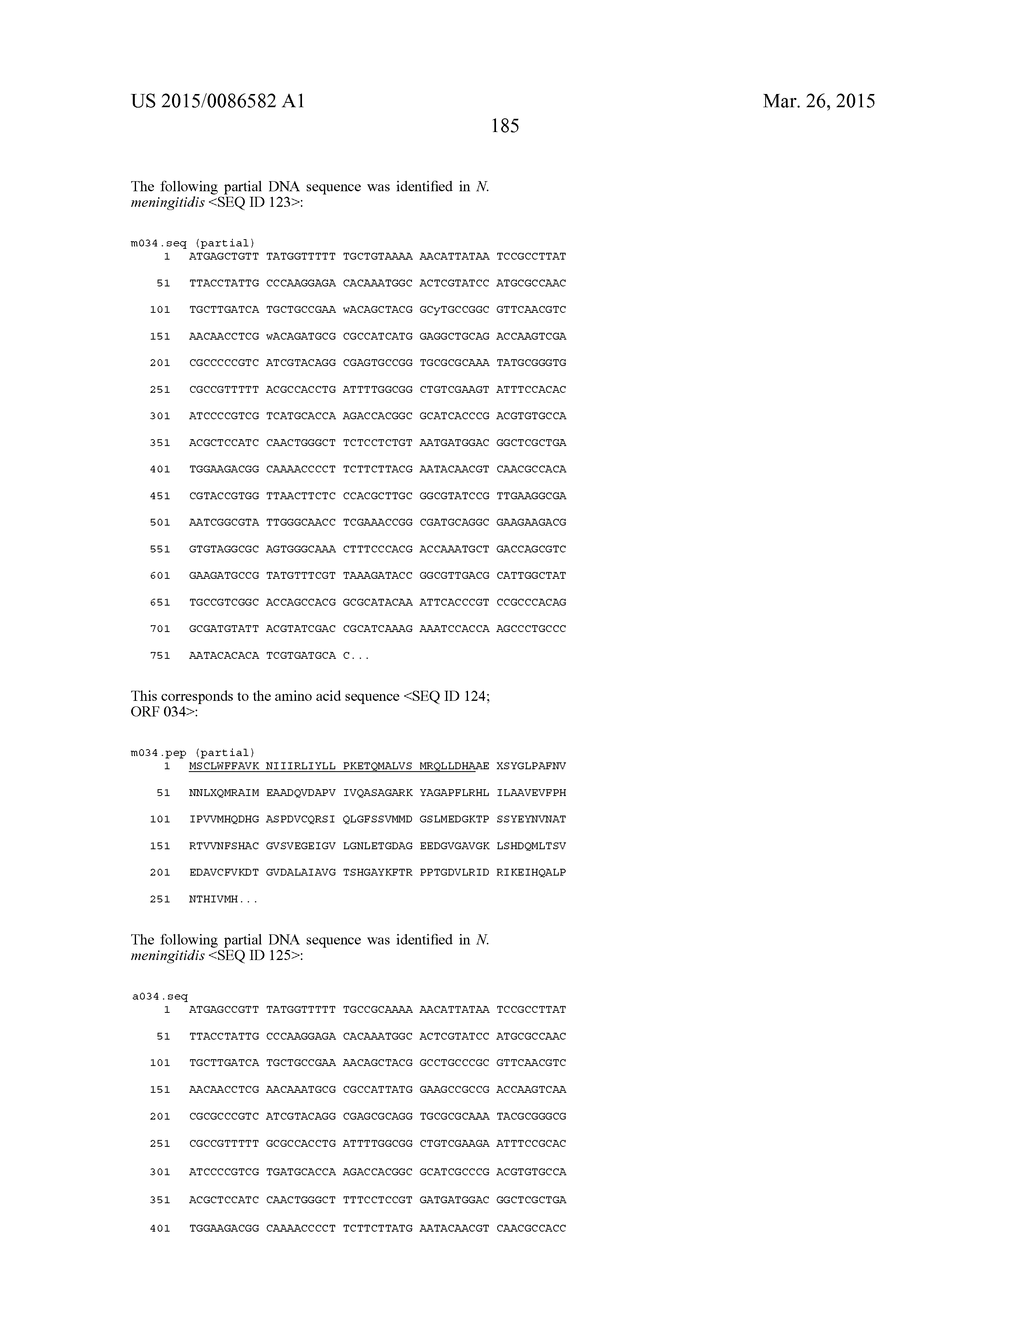 NEISSERIA MENINGITIDIS ANTIGENS AND COMPOSITIONS - diagram, schematic, and image 217